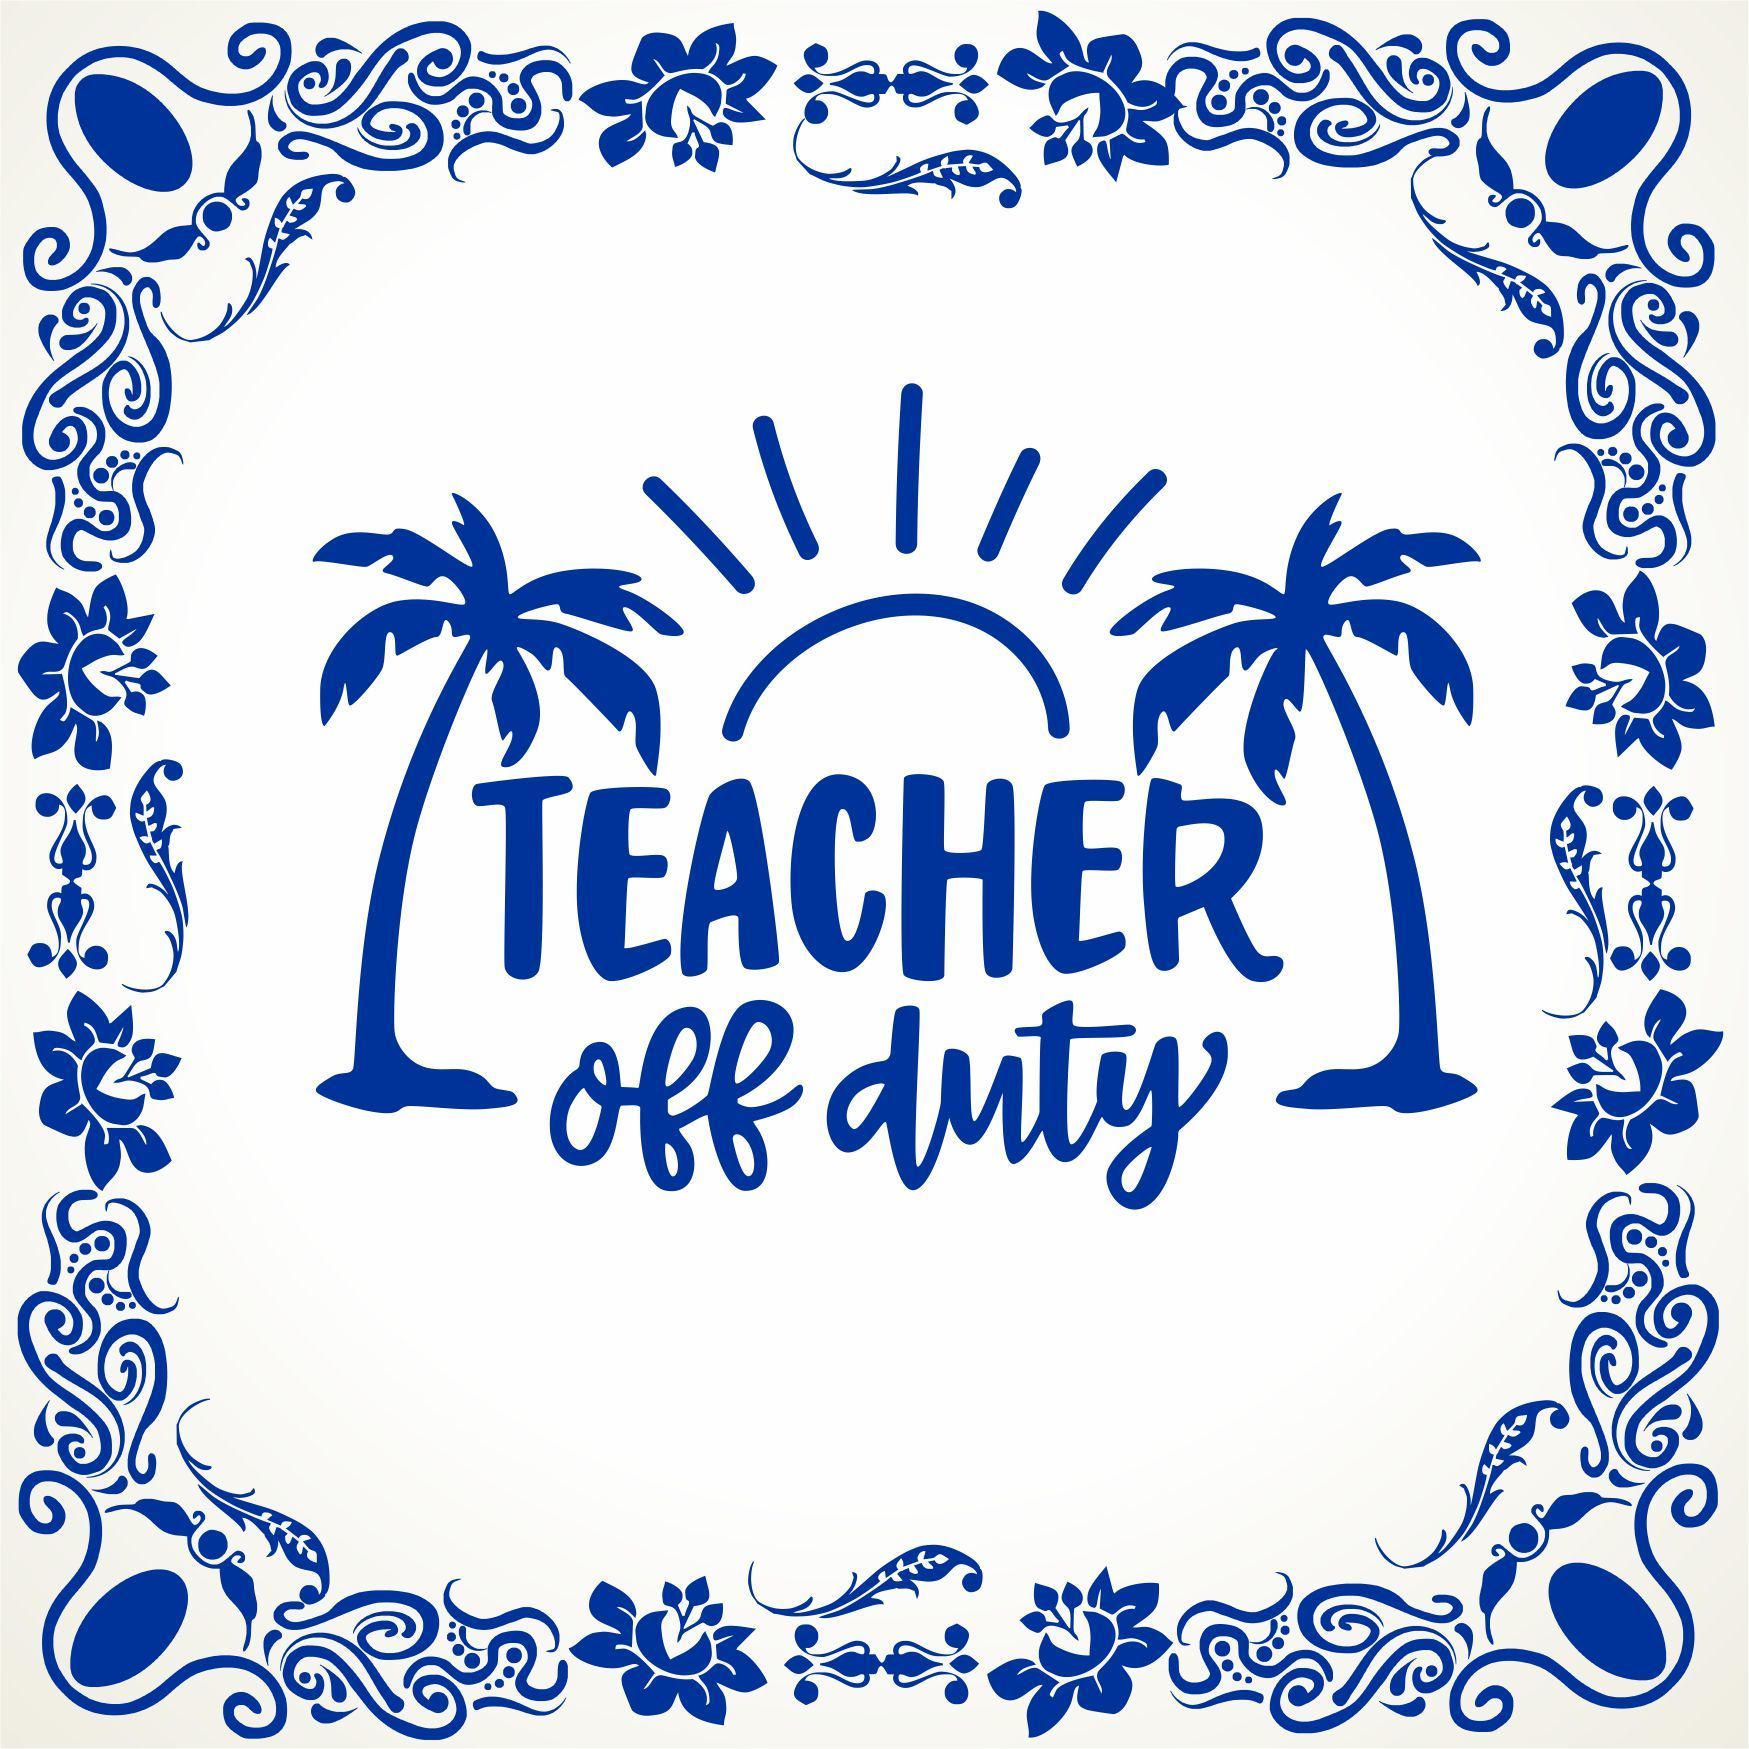 Teacher off duty spreukentegeltje